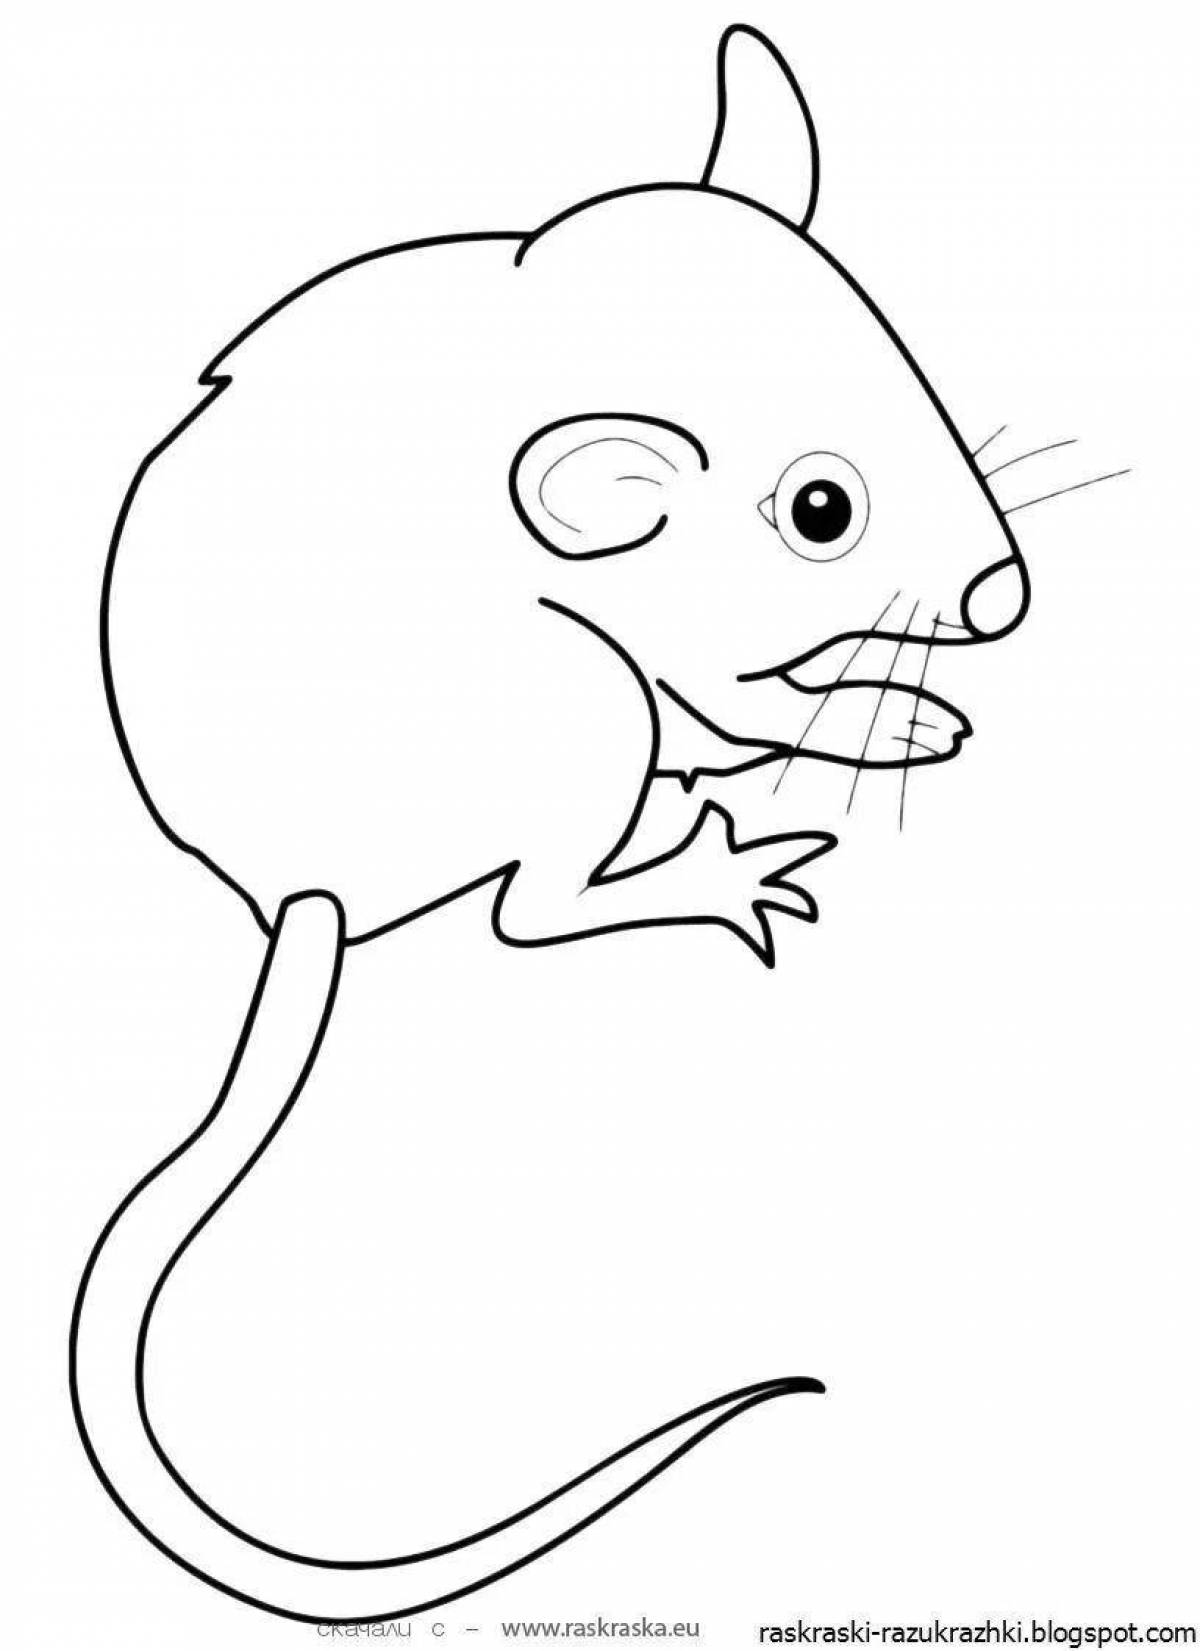 Яркий рисунок мыши